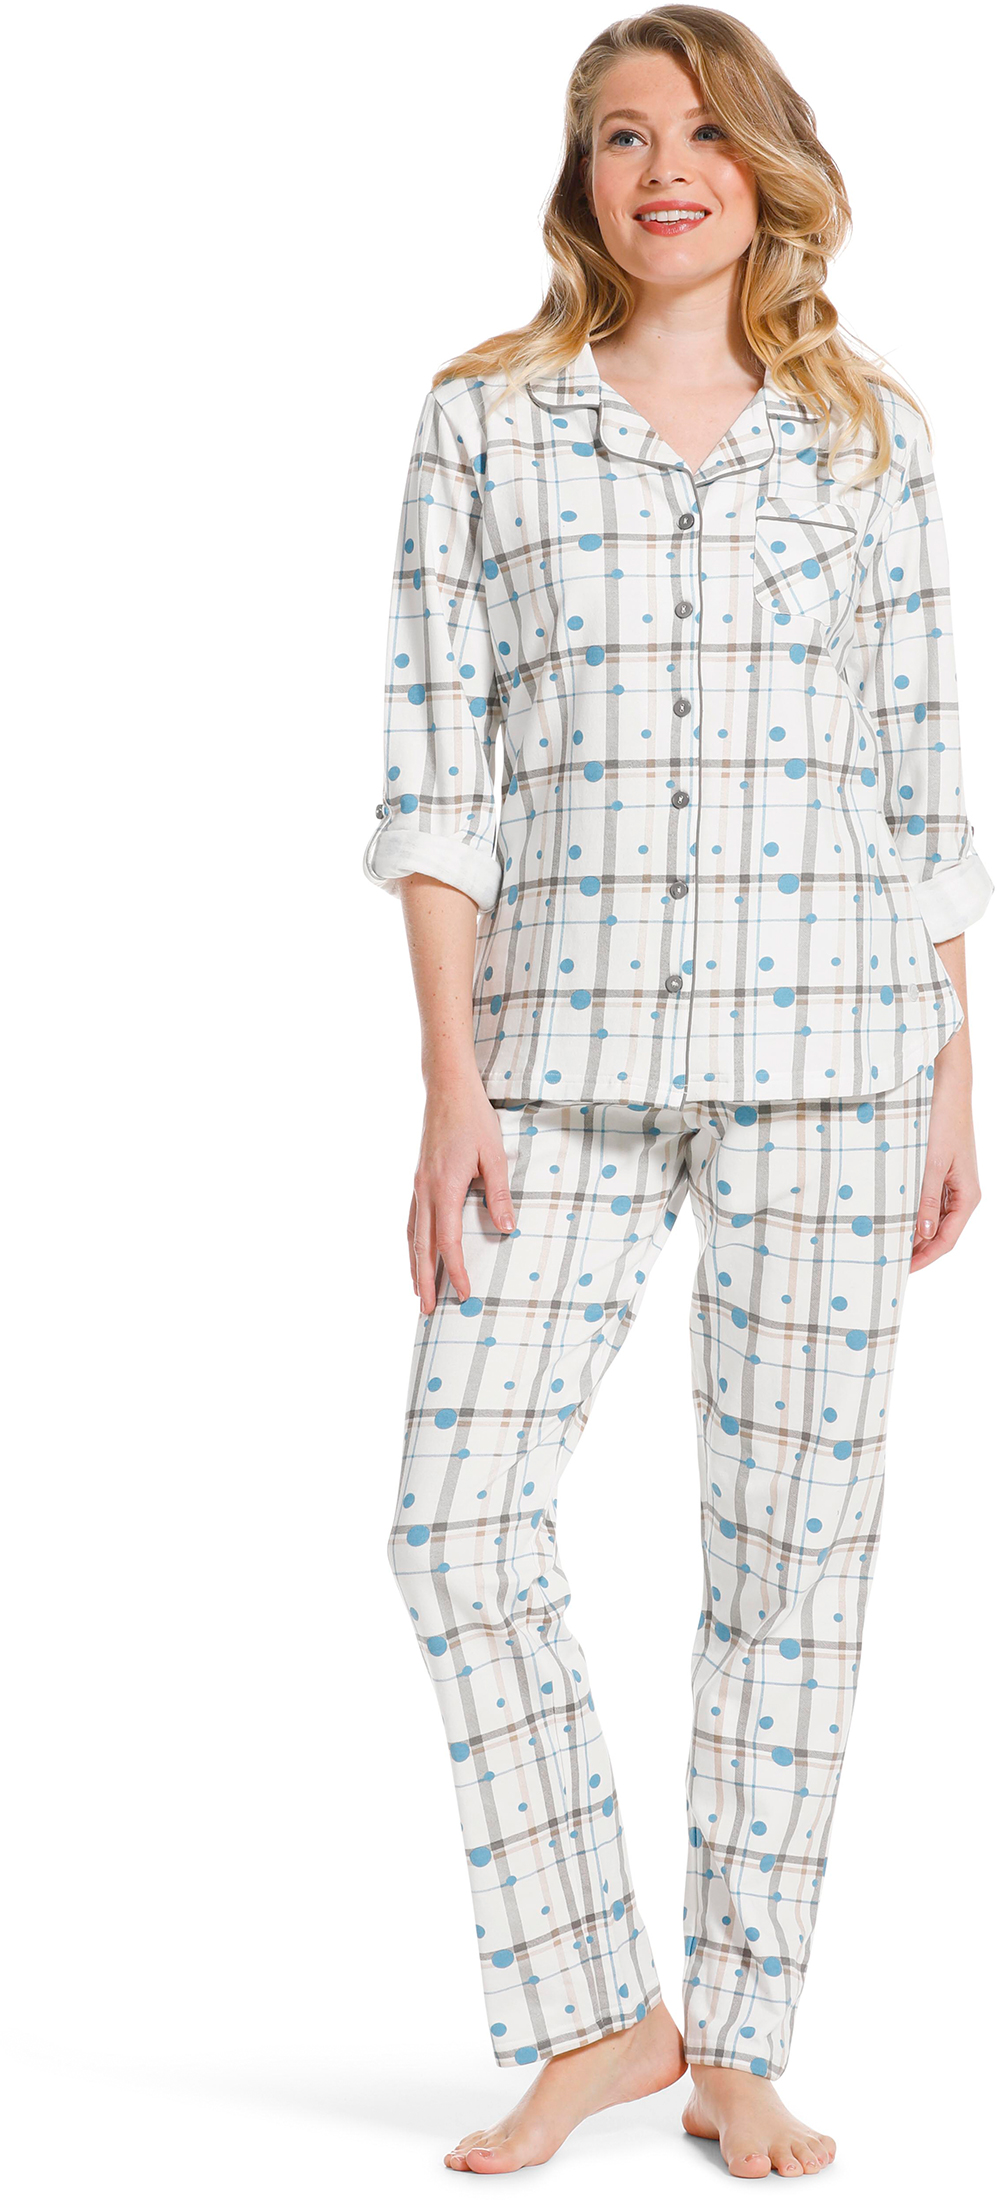 Pastunette dames doorknoop pyjama 20222-142-6-48